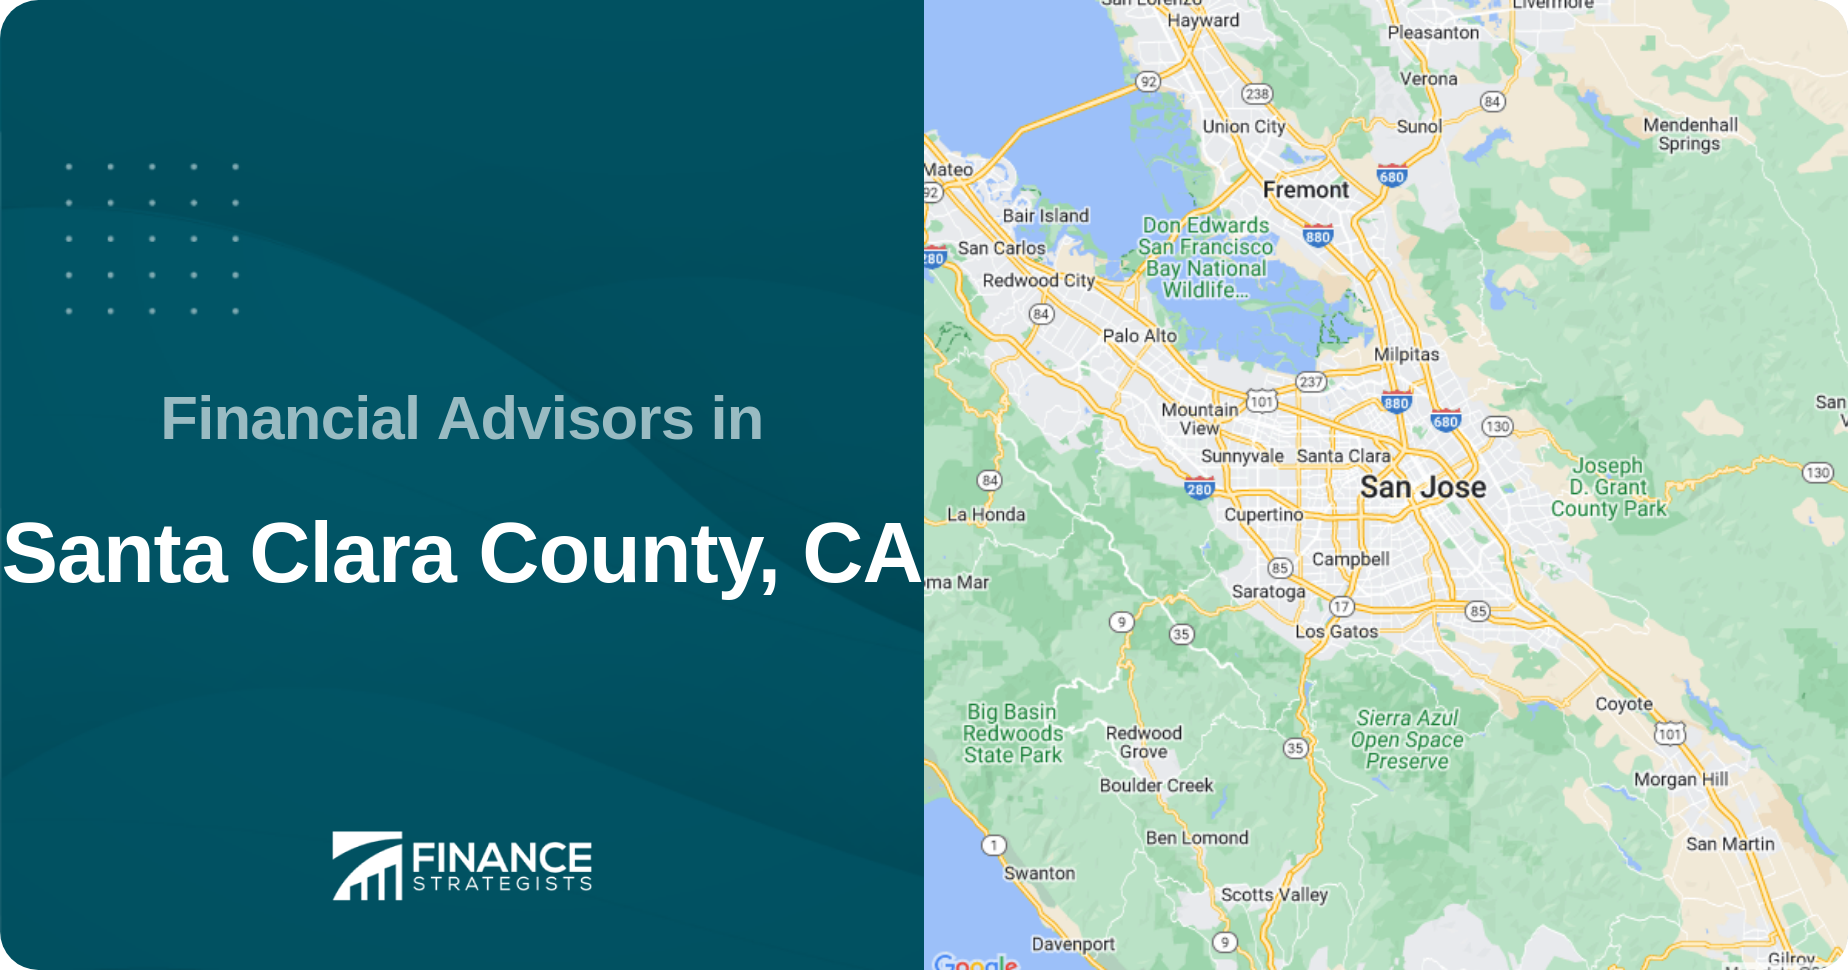 Financial Advisors in Santa Clara County, CA